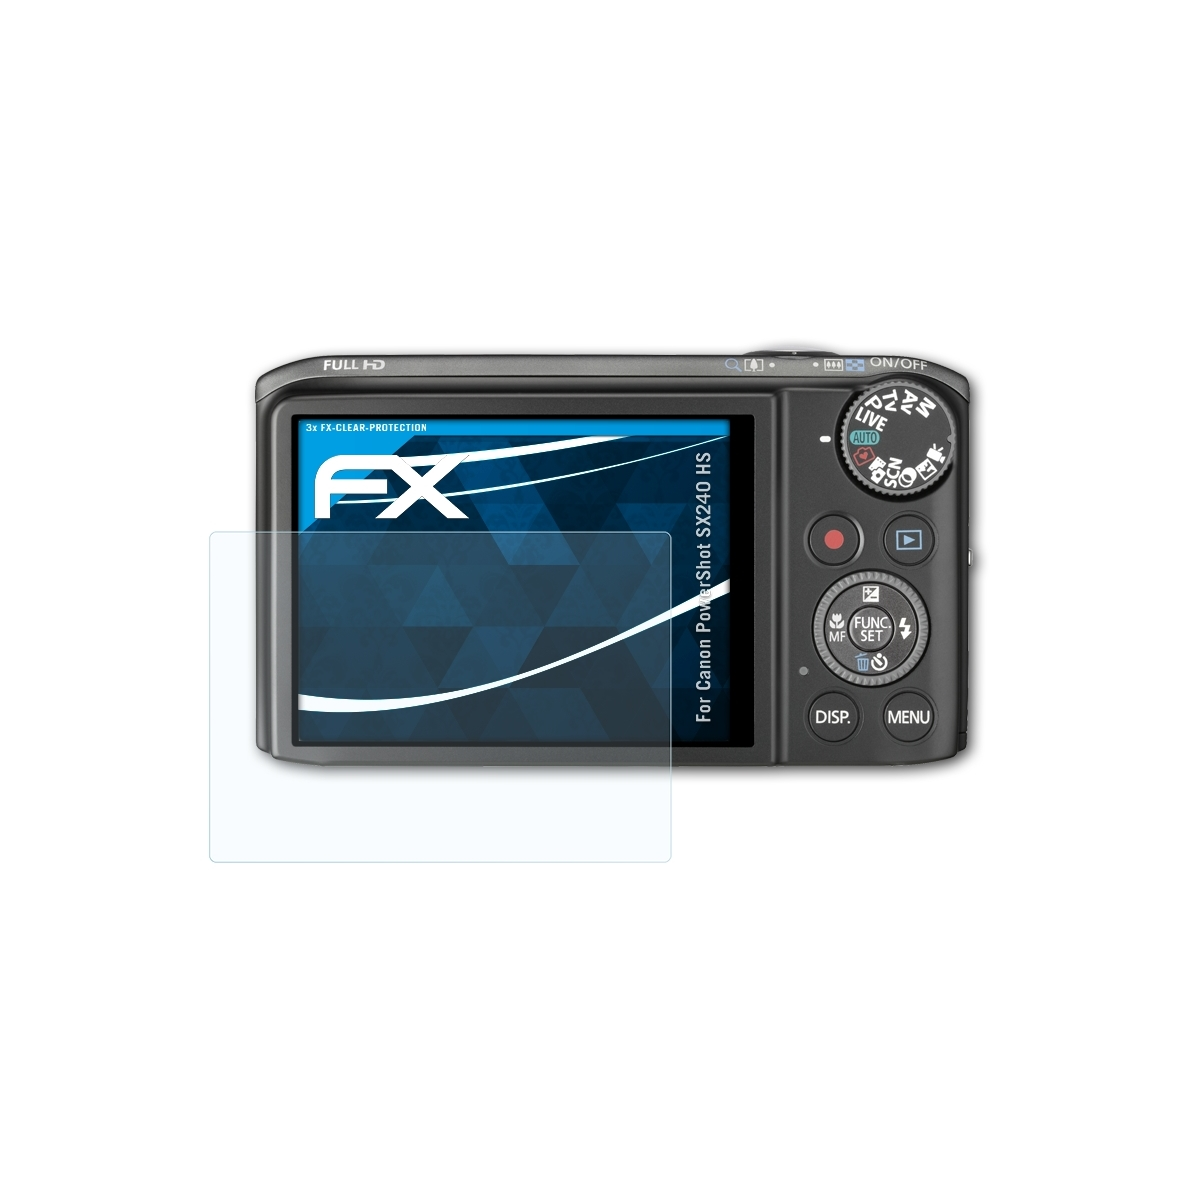 ATFOLIX 3x FX-Clear HS) Displayschutz(für PowerShot SX240 Canon